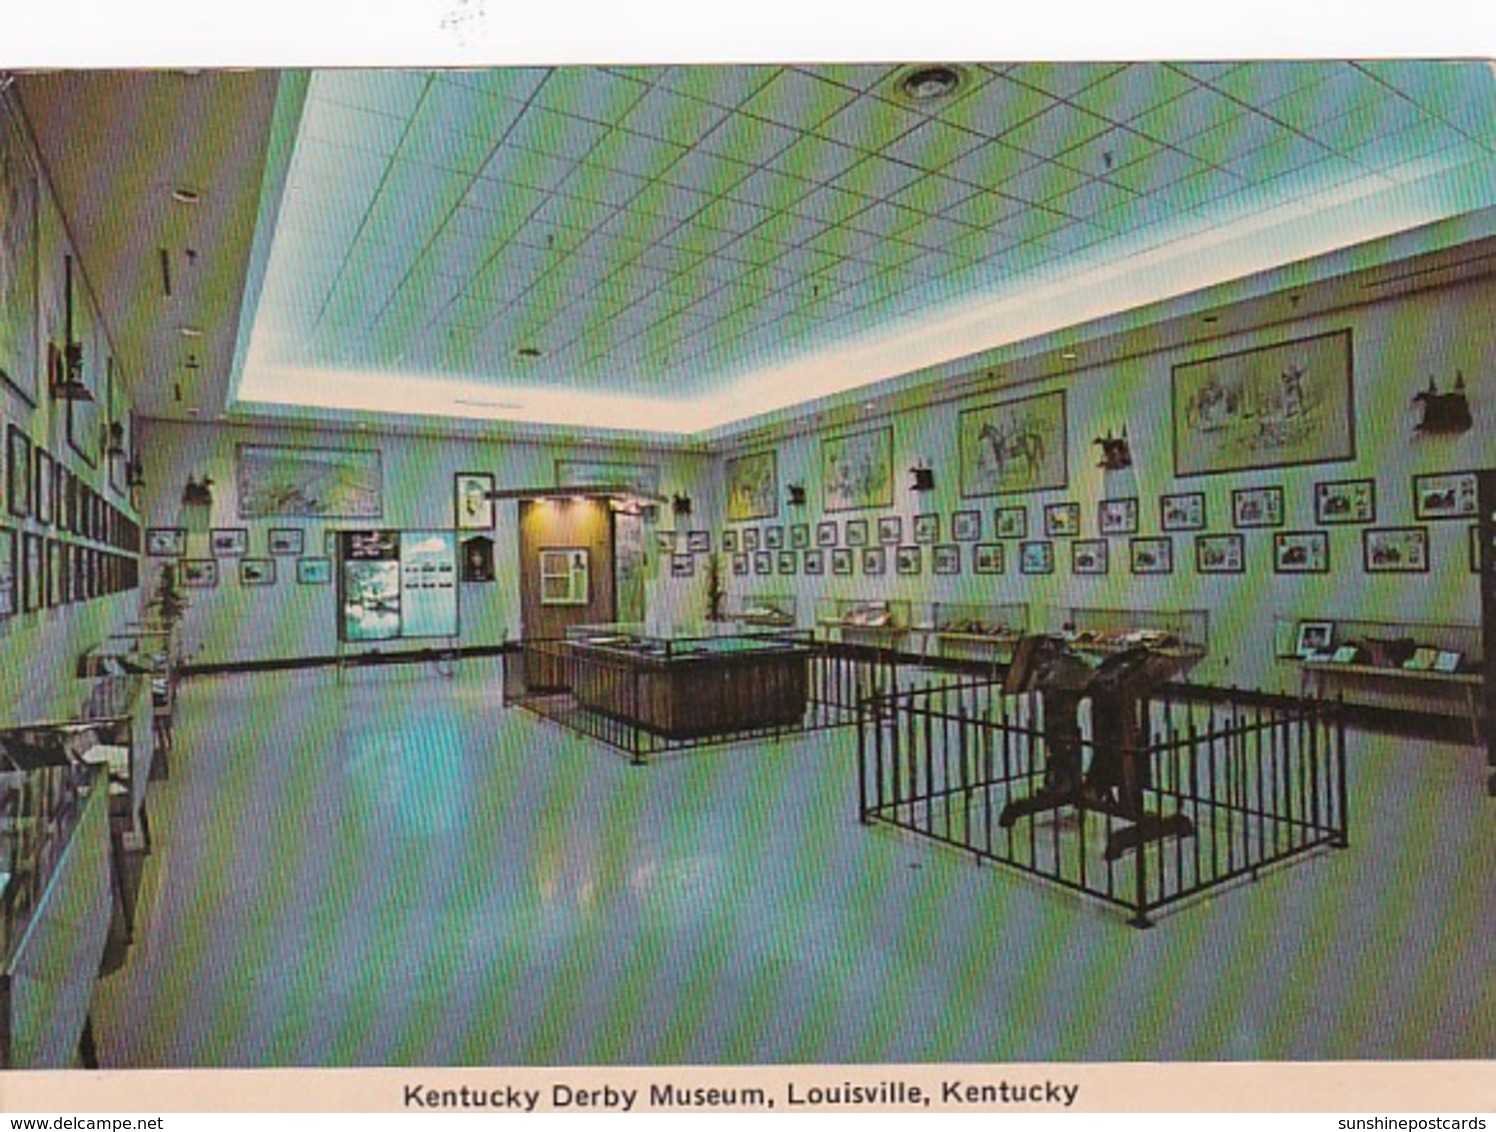 Kentucky Louisville The Kentucky Derby Museum Interior - Louisville